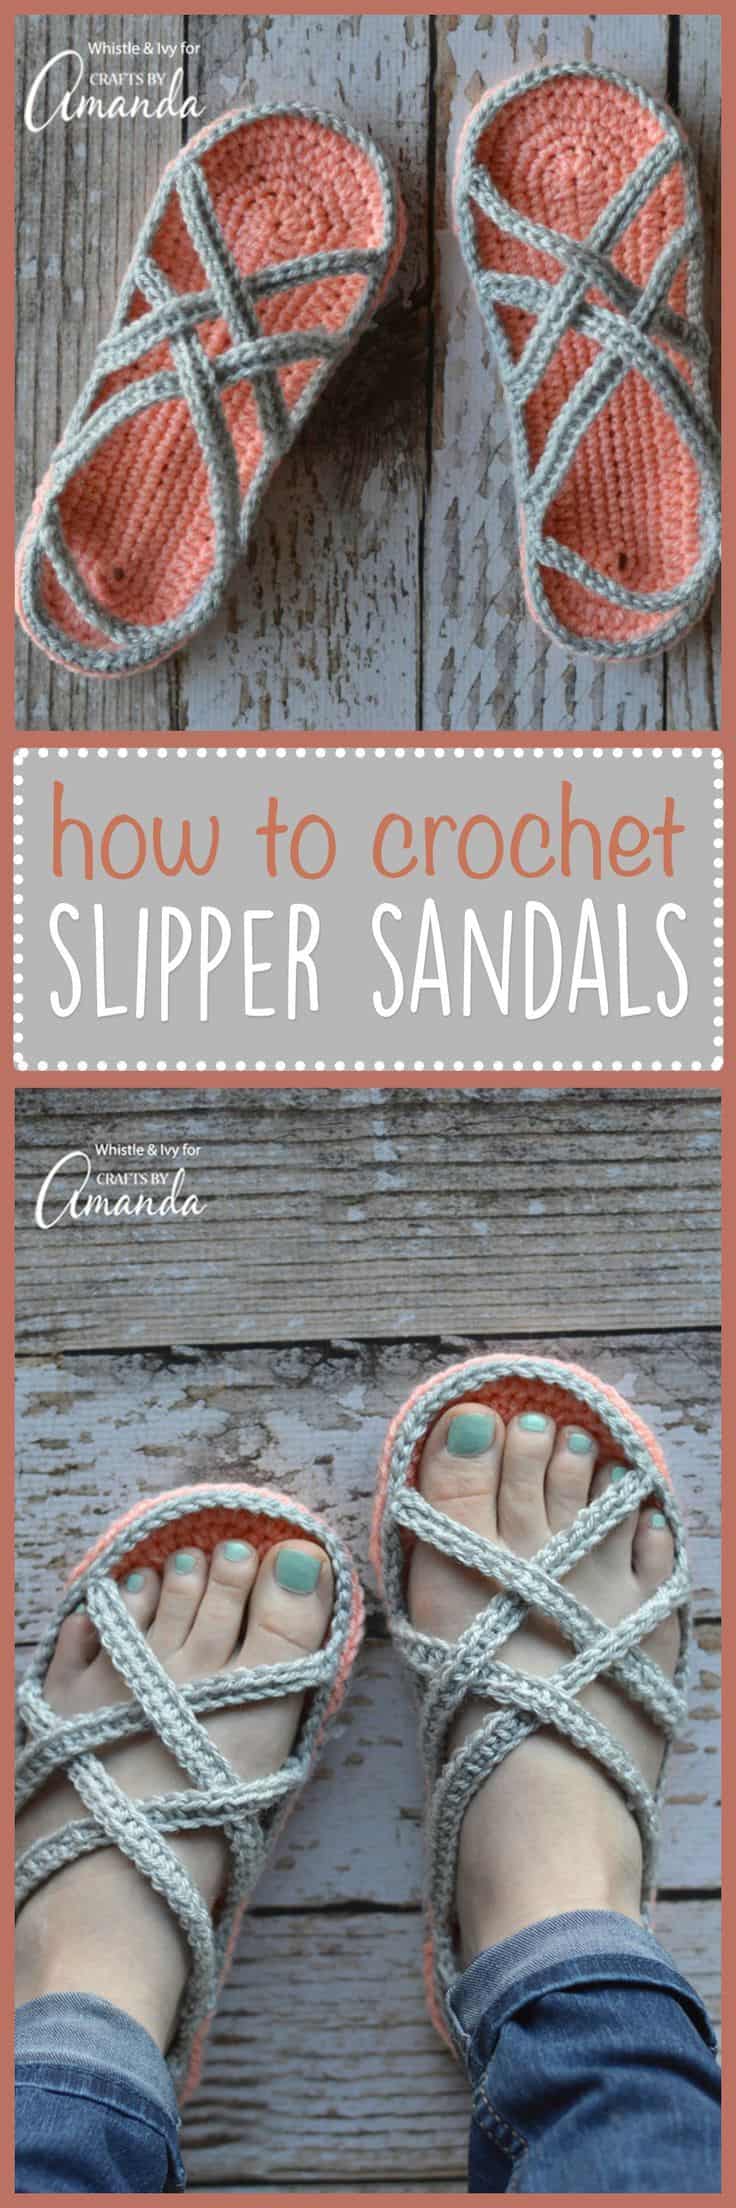 Crocheted slipper sandals